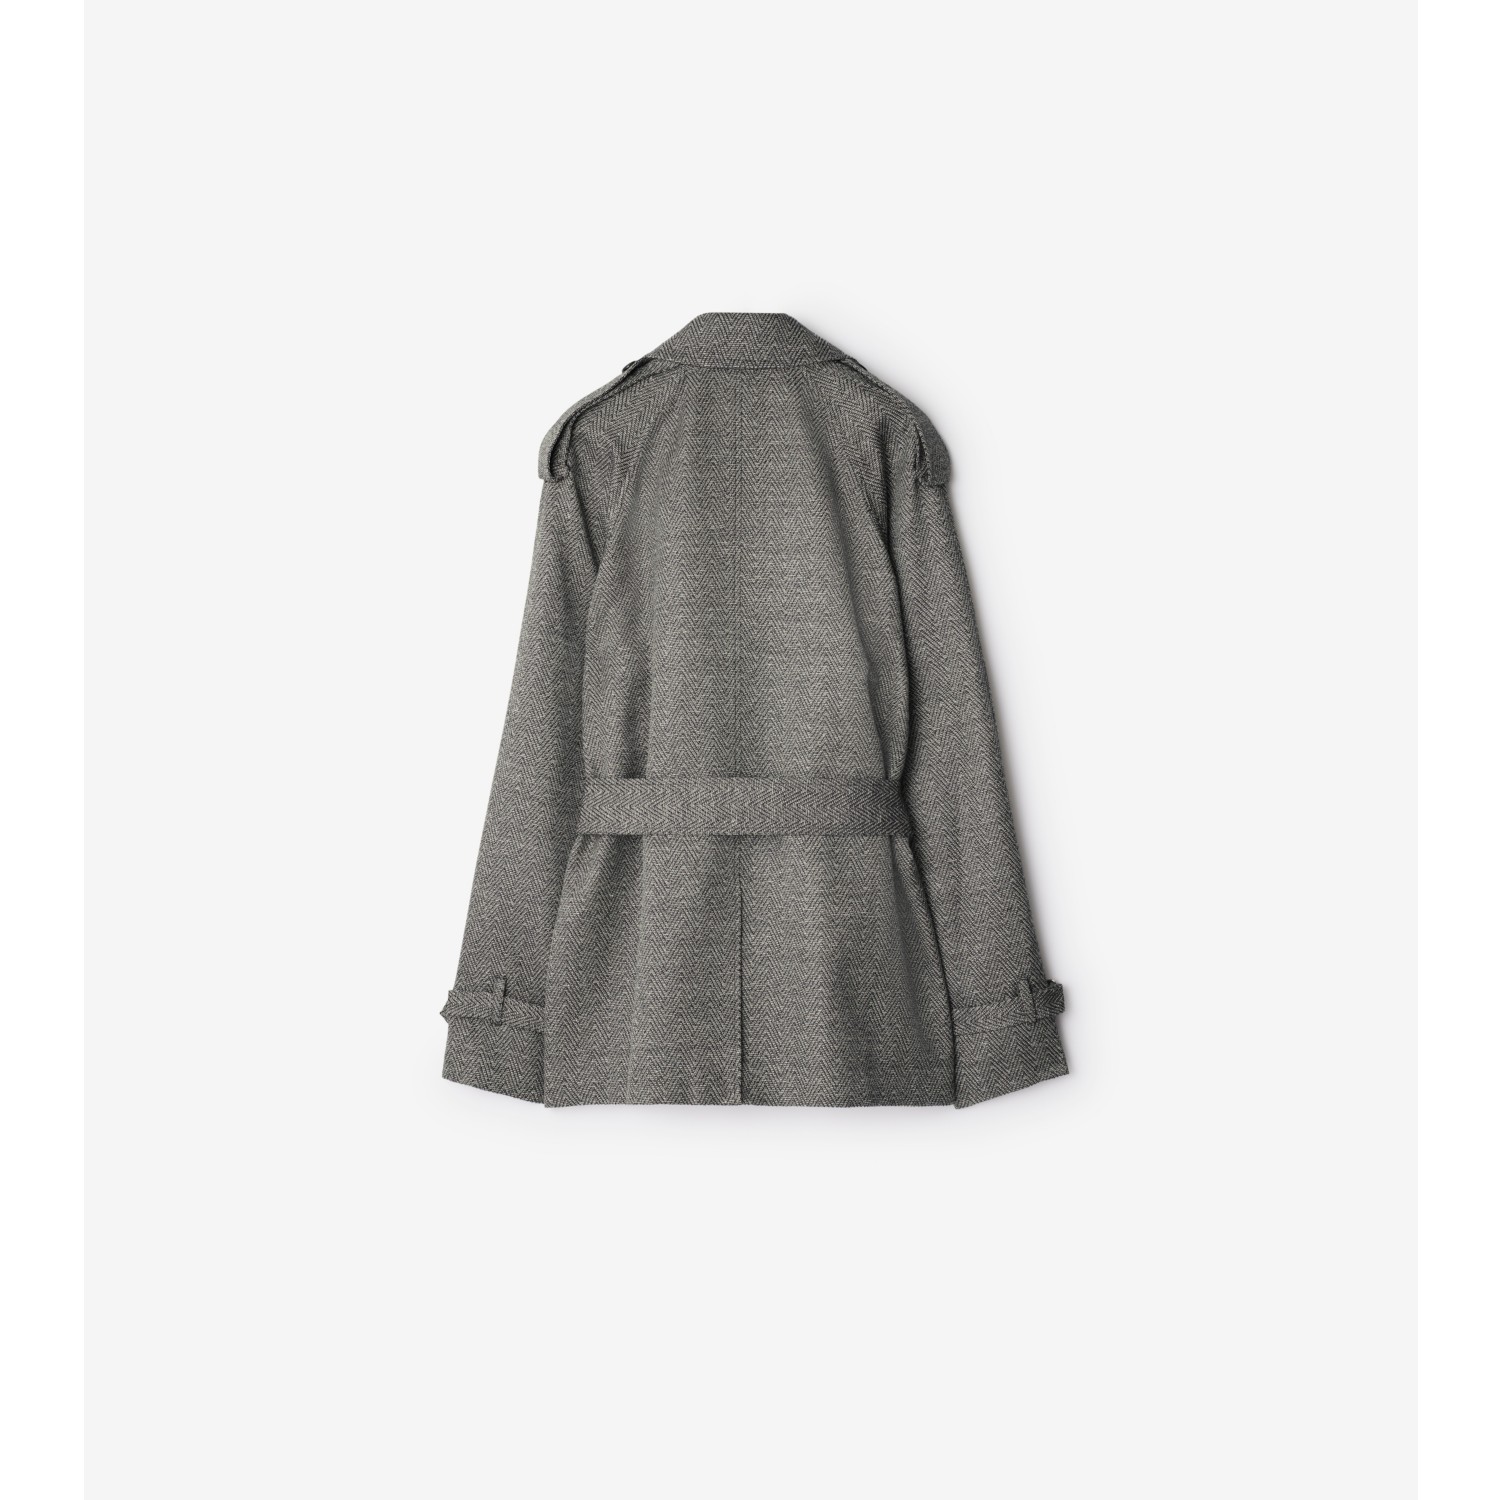 Chaqueta estilo trench coat en lana y seda